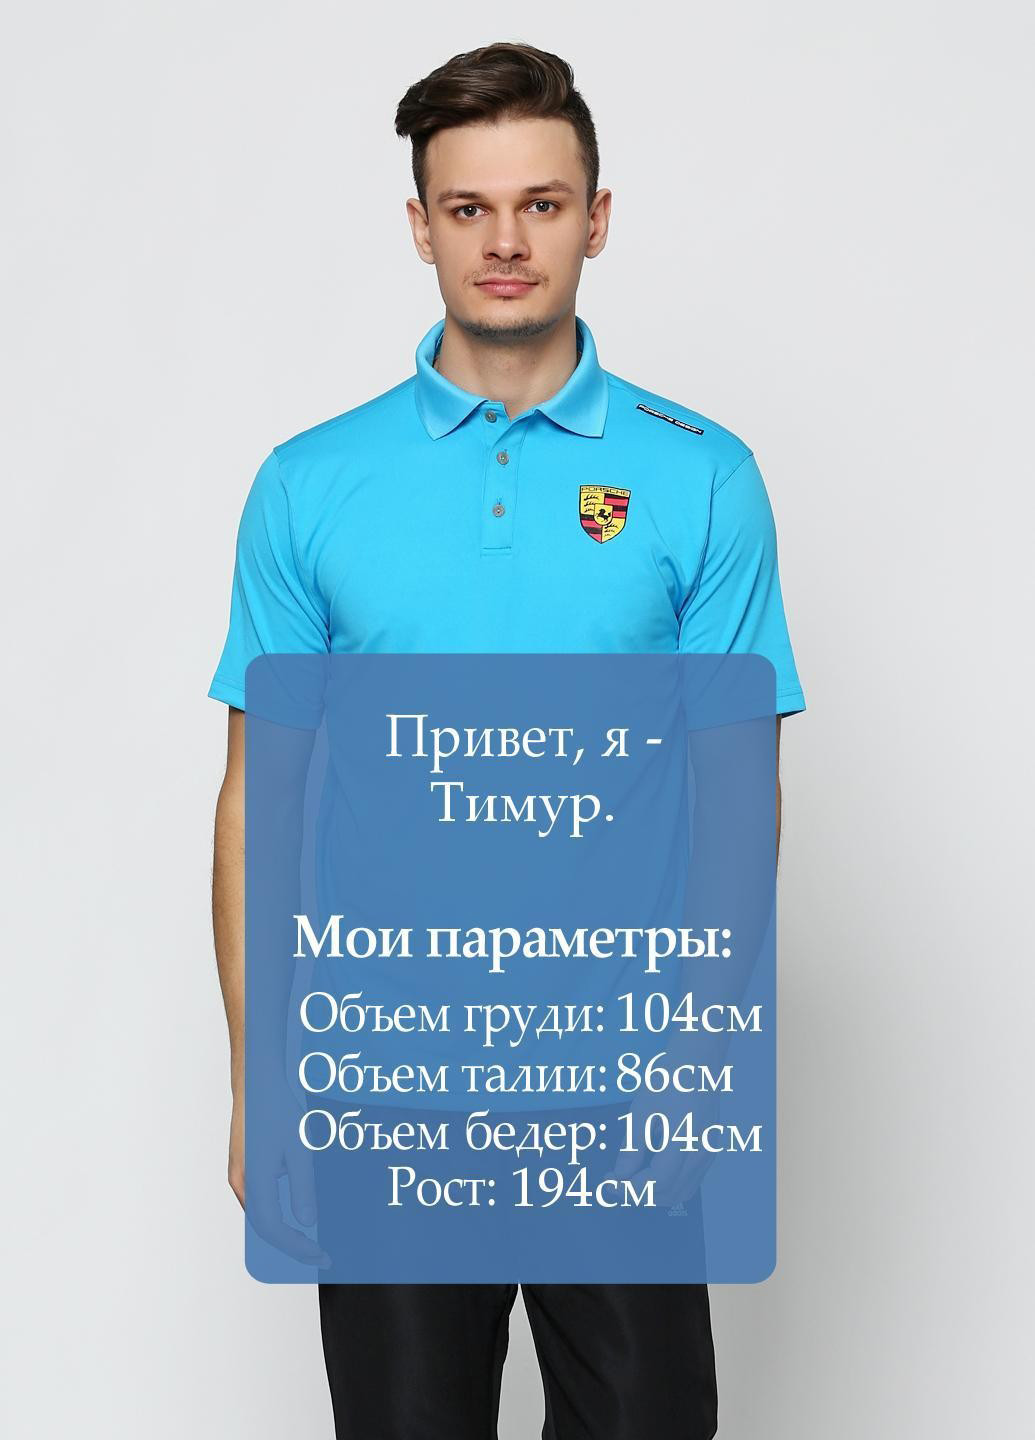 Голубой футболка-поло для мужчин Adidas Porsche Design с логотипом